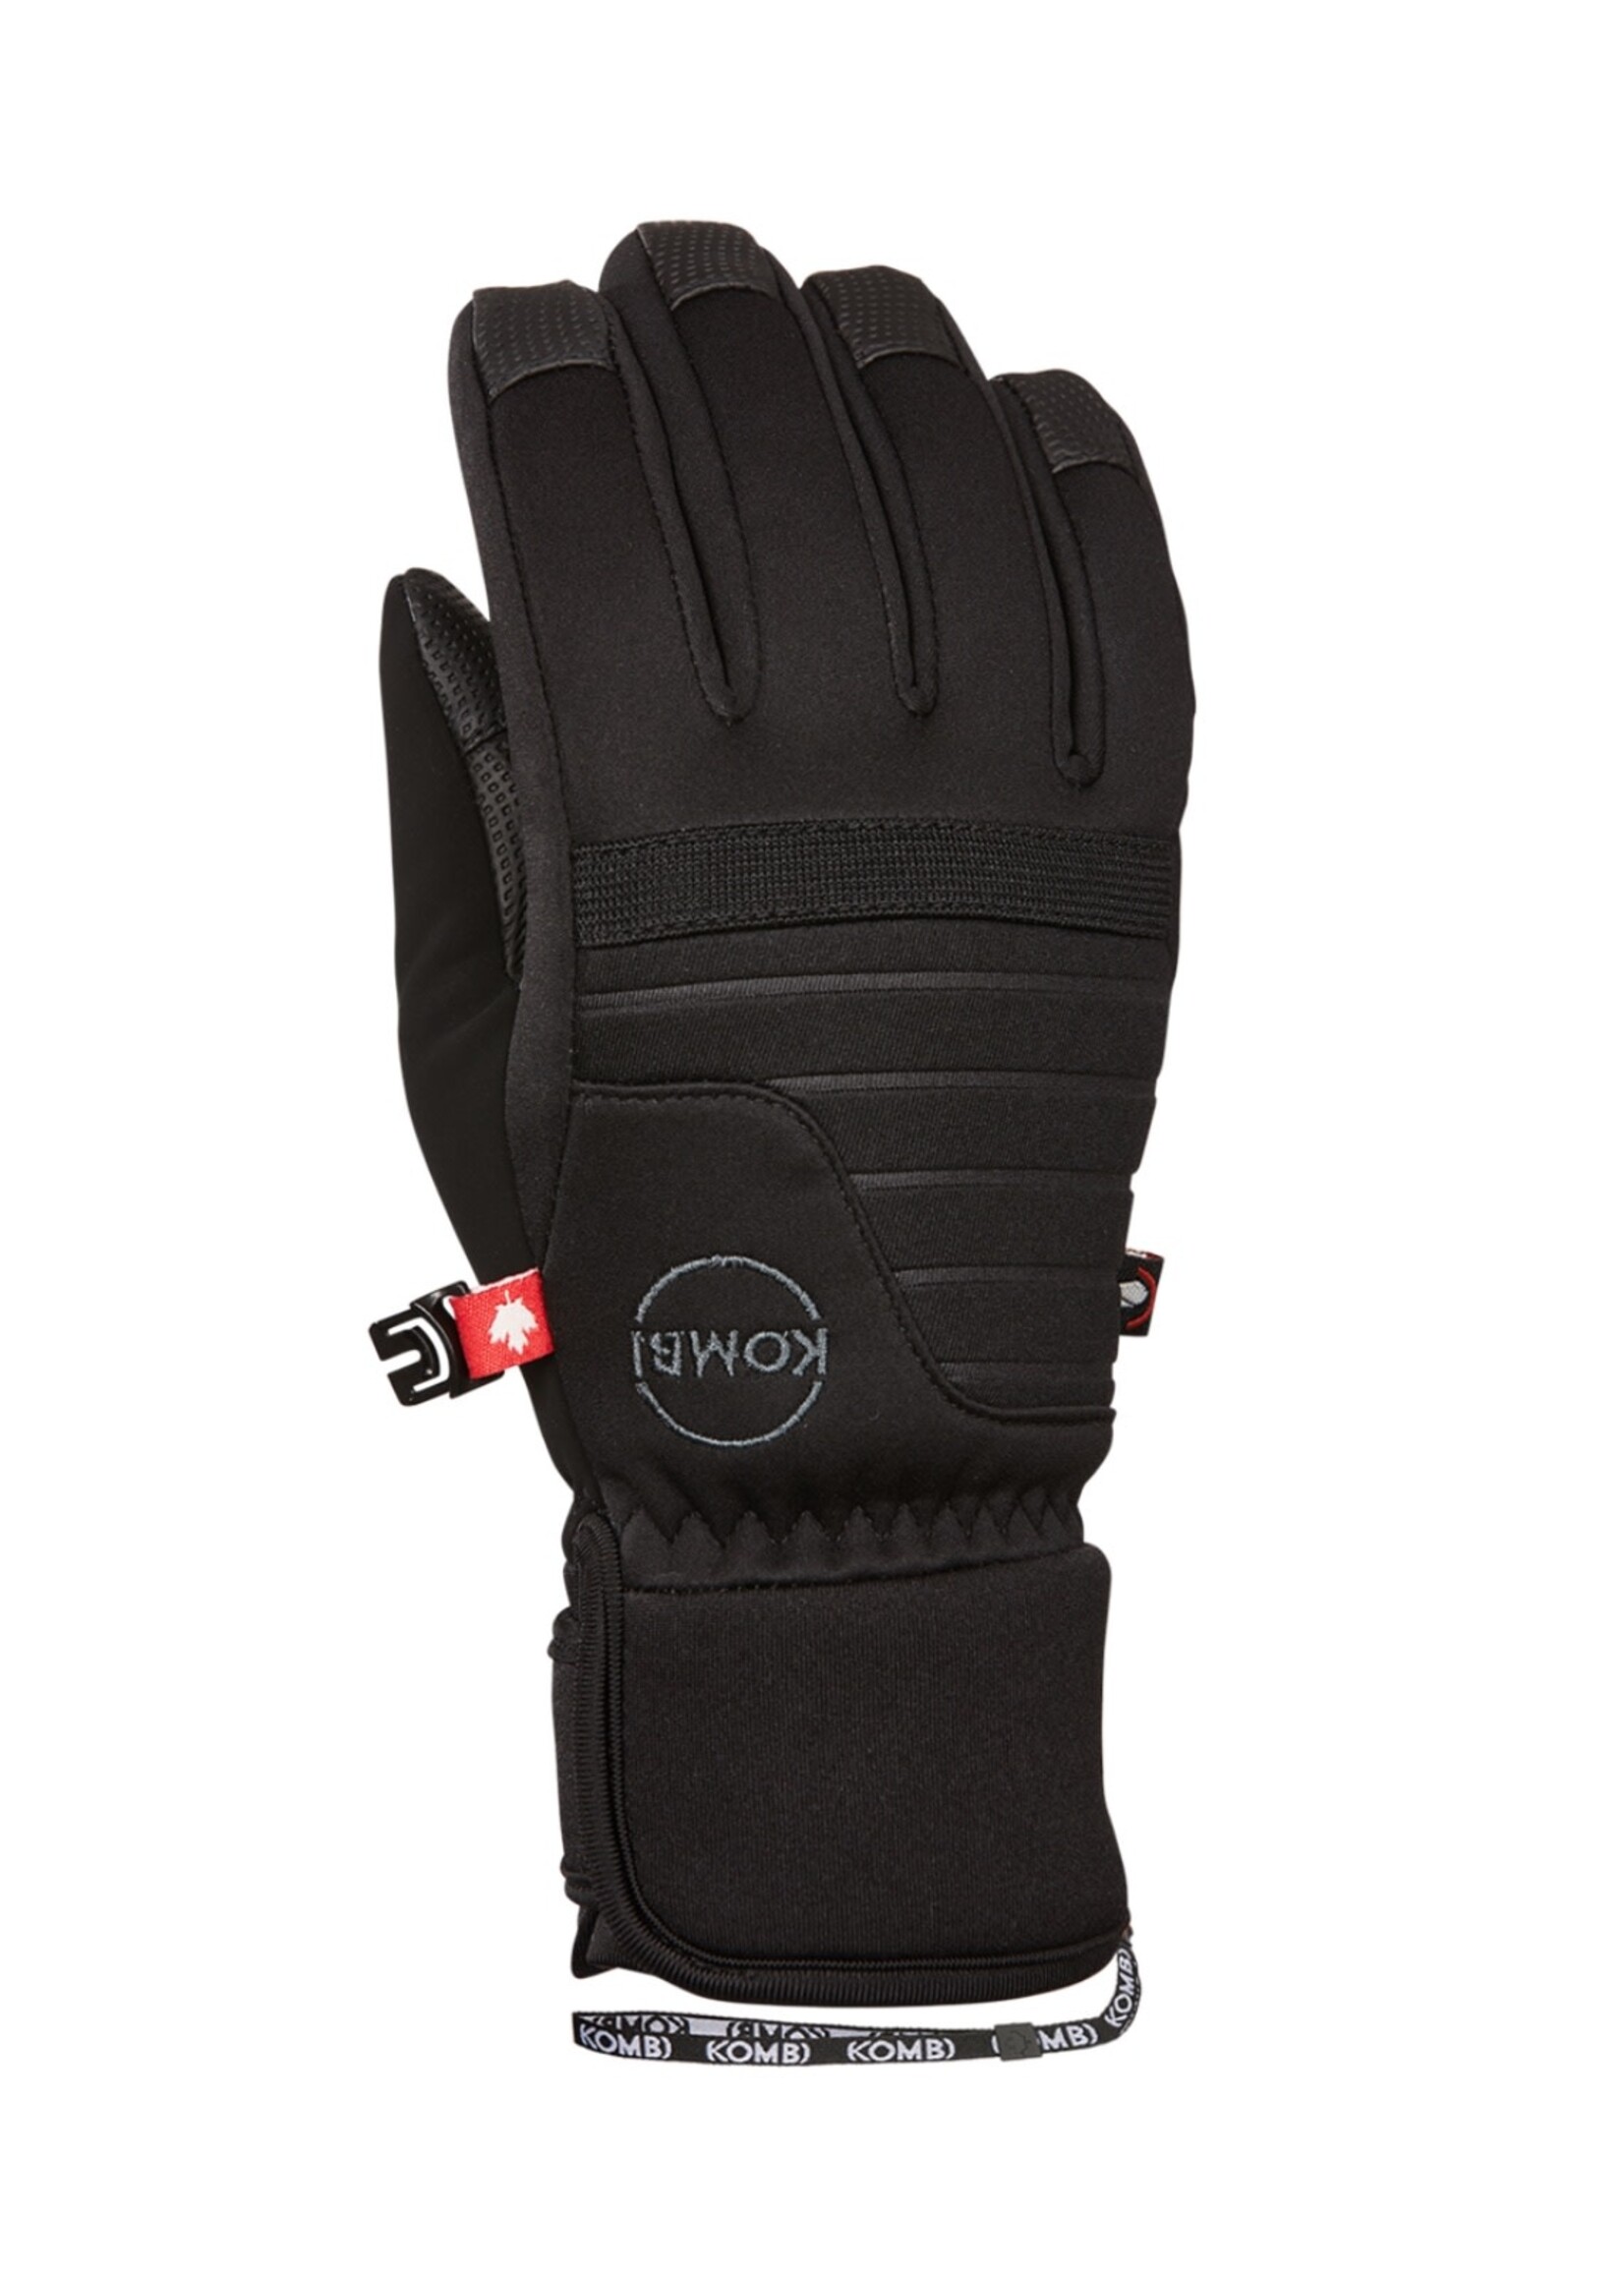 Kombi Kombi, Sleek WATERGUARD® Gloves - Juniors